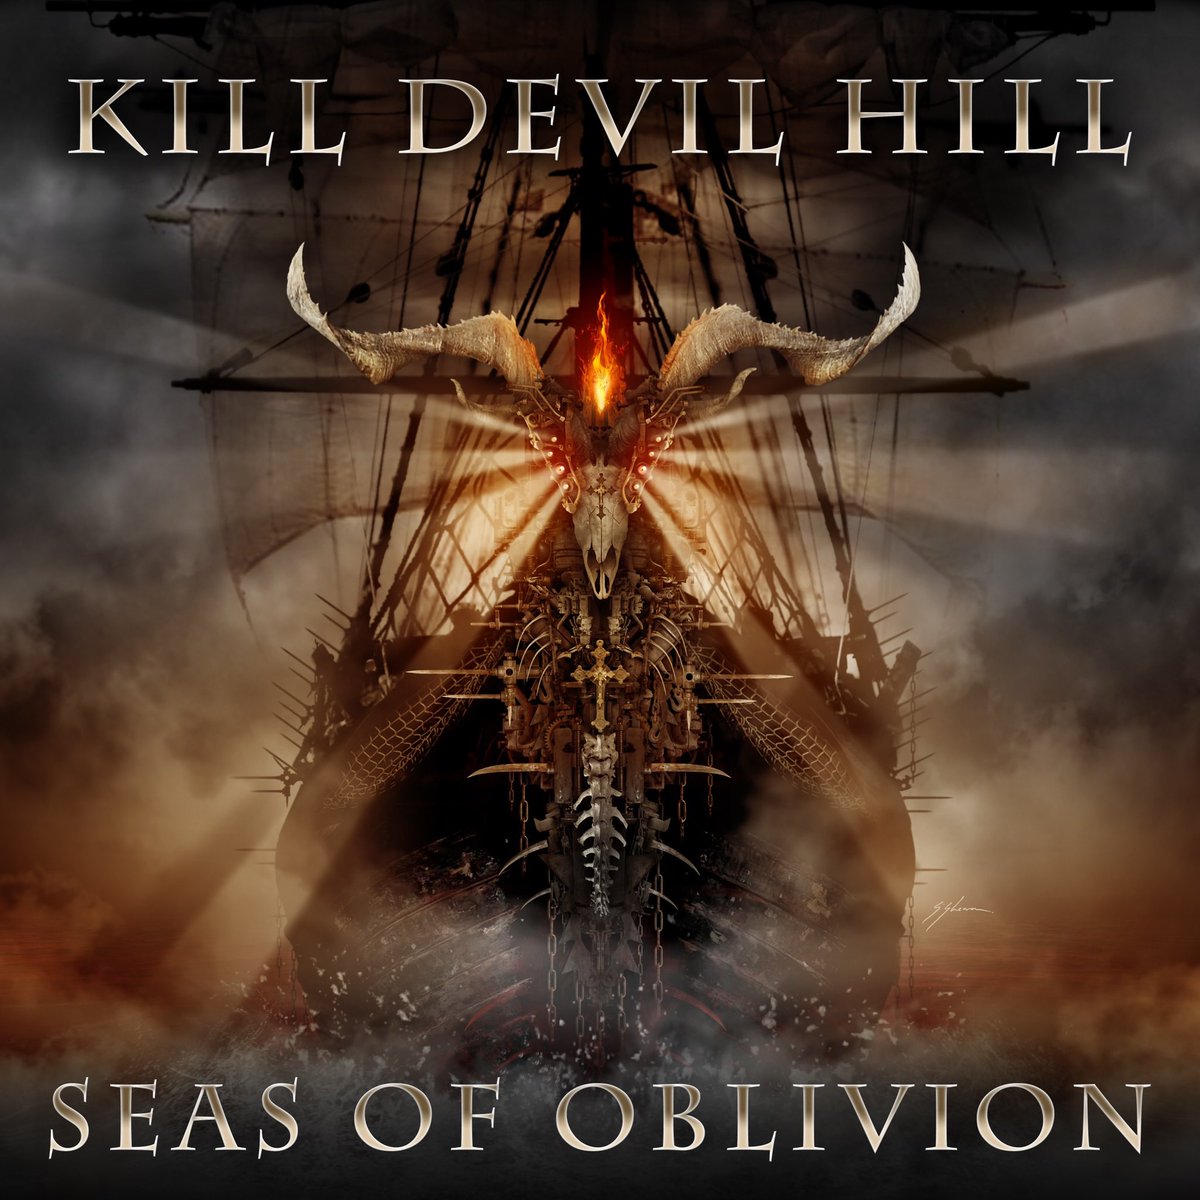 Killer cover art by Mister Sam Shearon! Seas of Oblivion drops Wednesday September 20th! #NewMusic2023